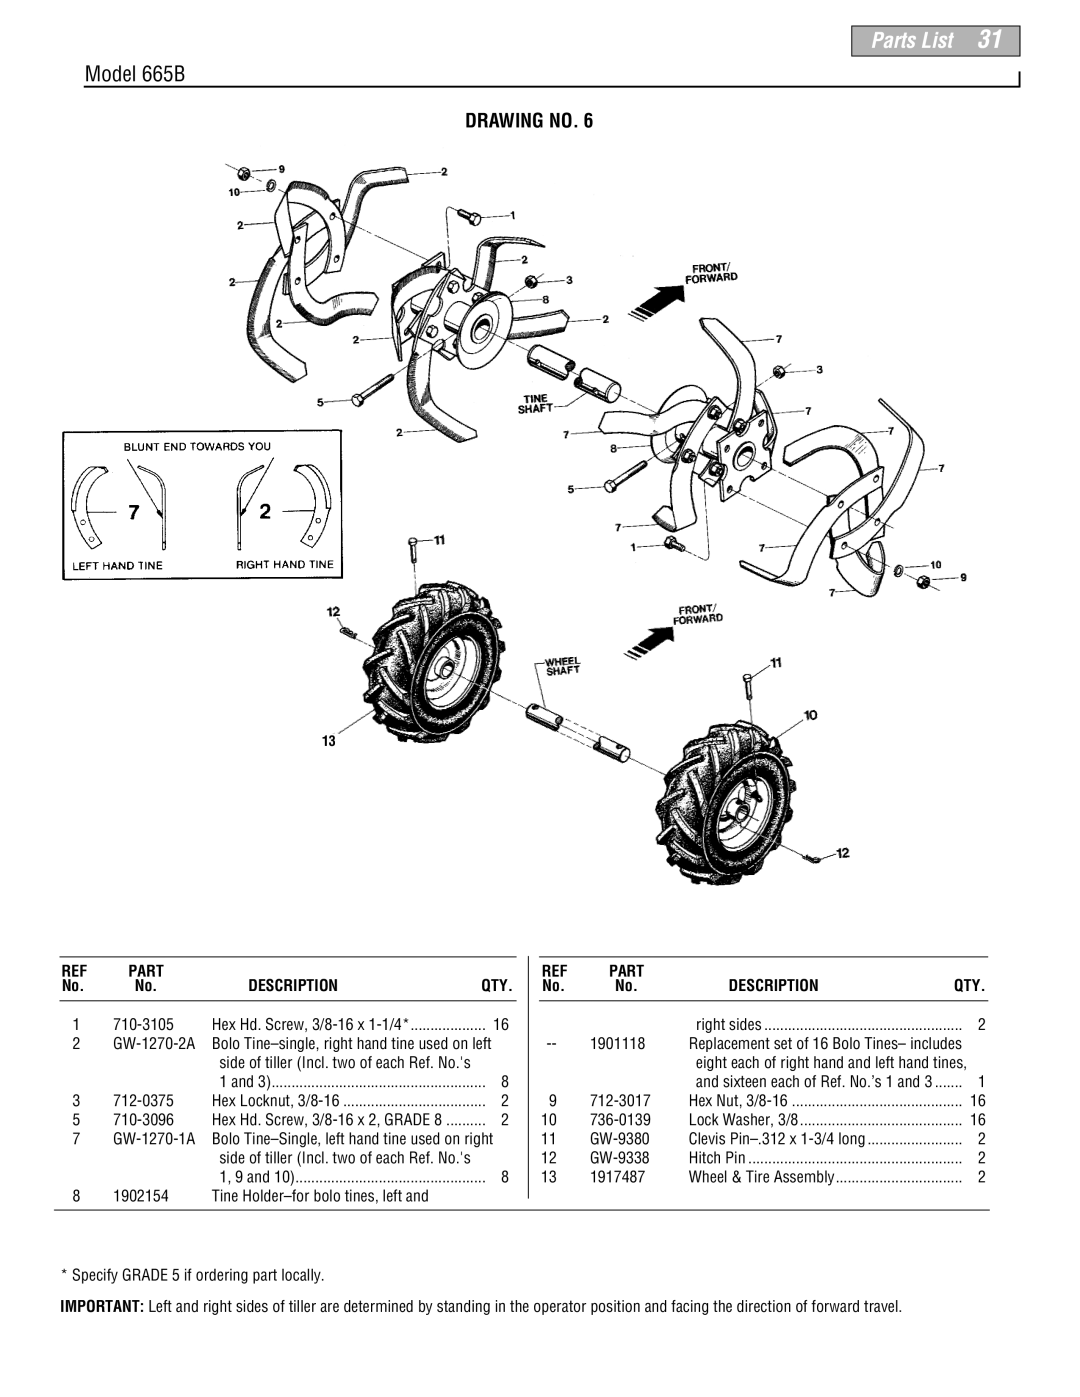 Troy-Bilt manual Parts List, Model 665B, Drawing No, Description 